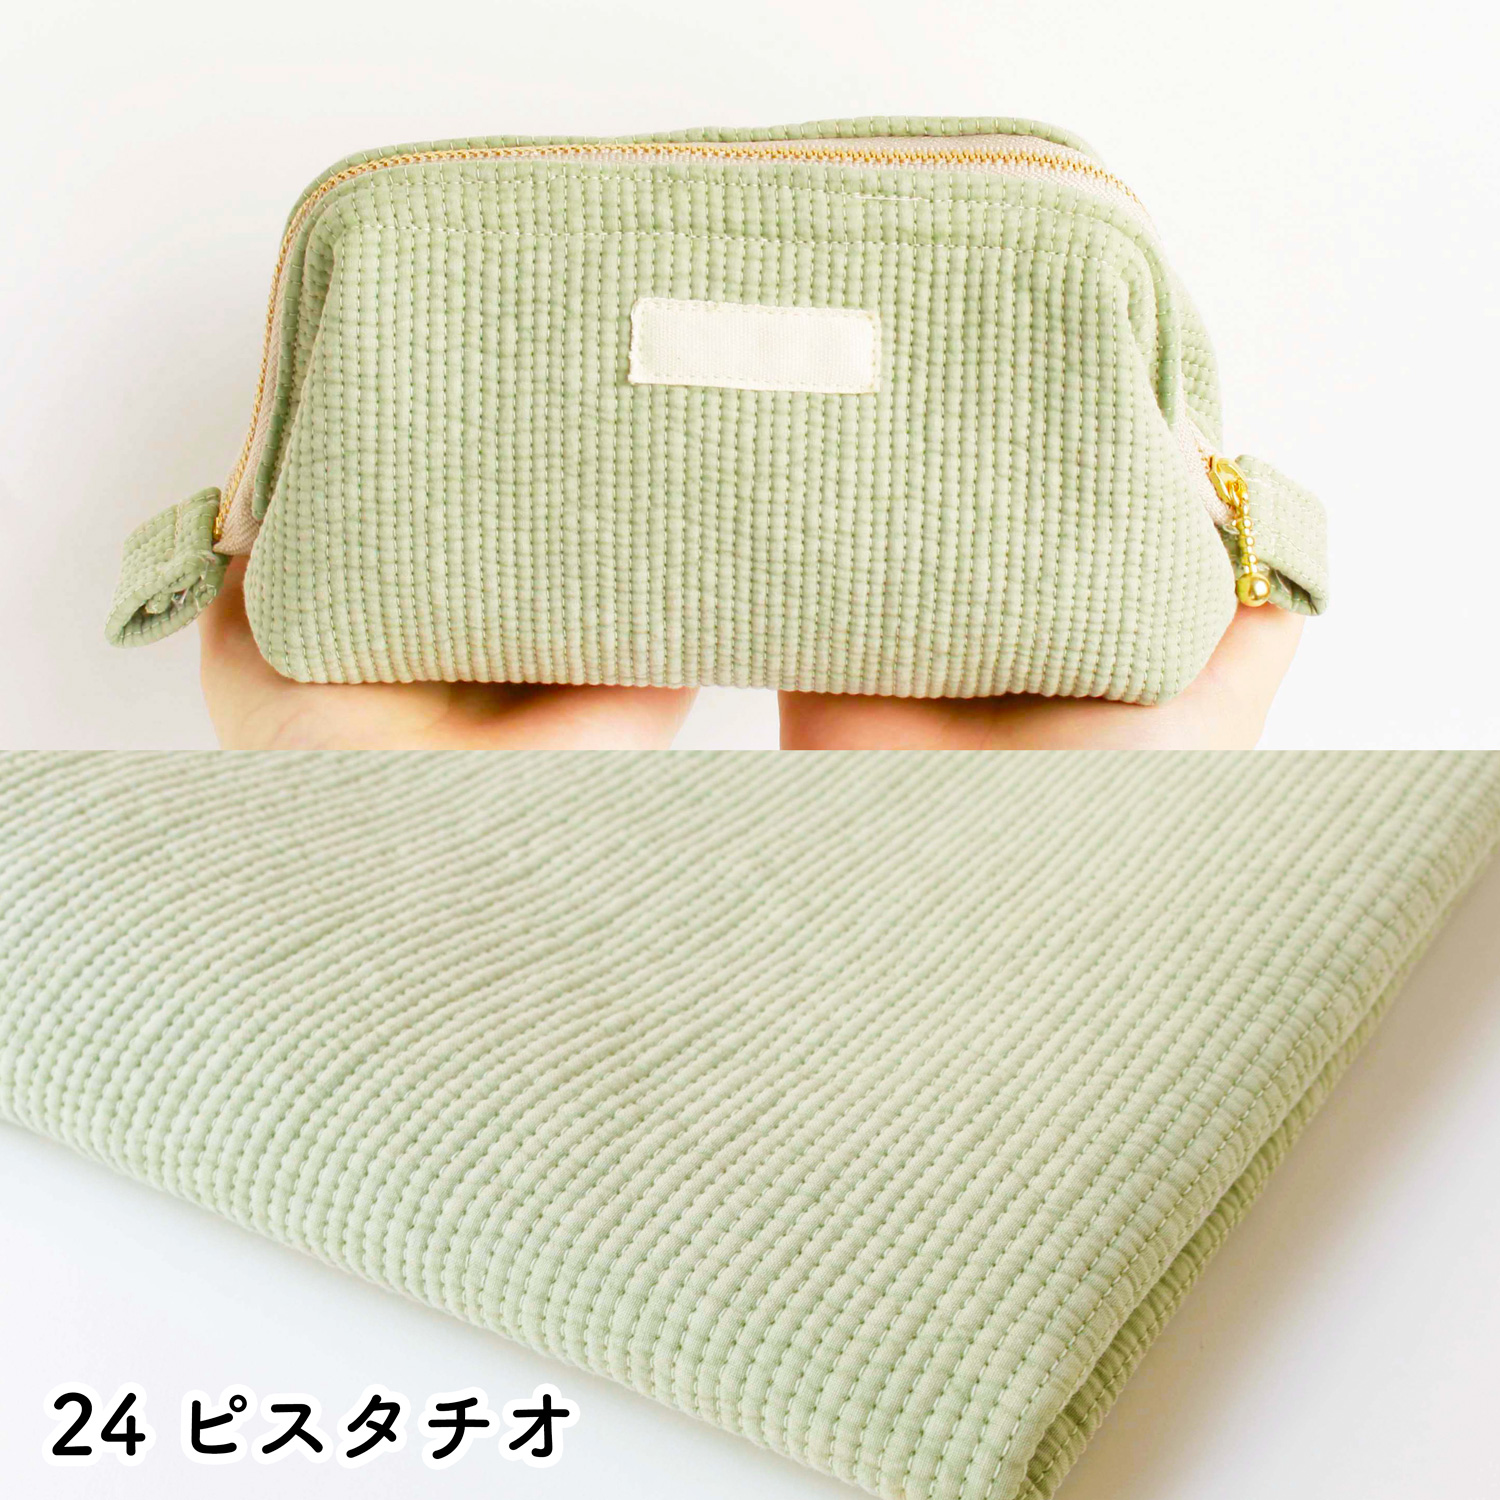 ■NBY303R nubi ヌビ 韓国伝統キルティング生地 巾3mmサイズ 原反約8m乱巻 (巻) 10